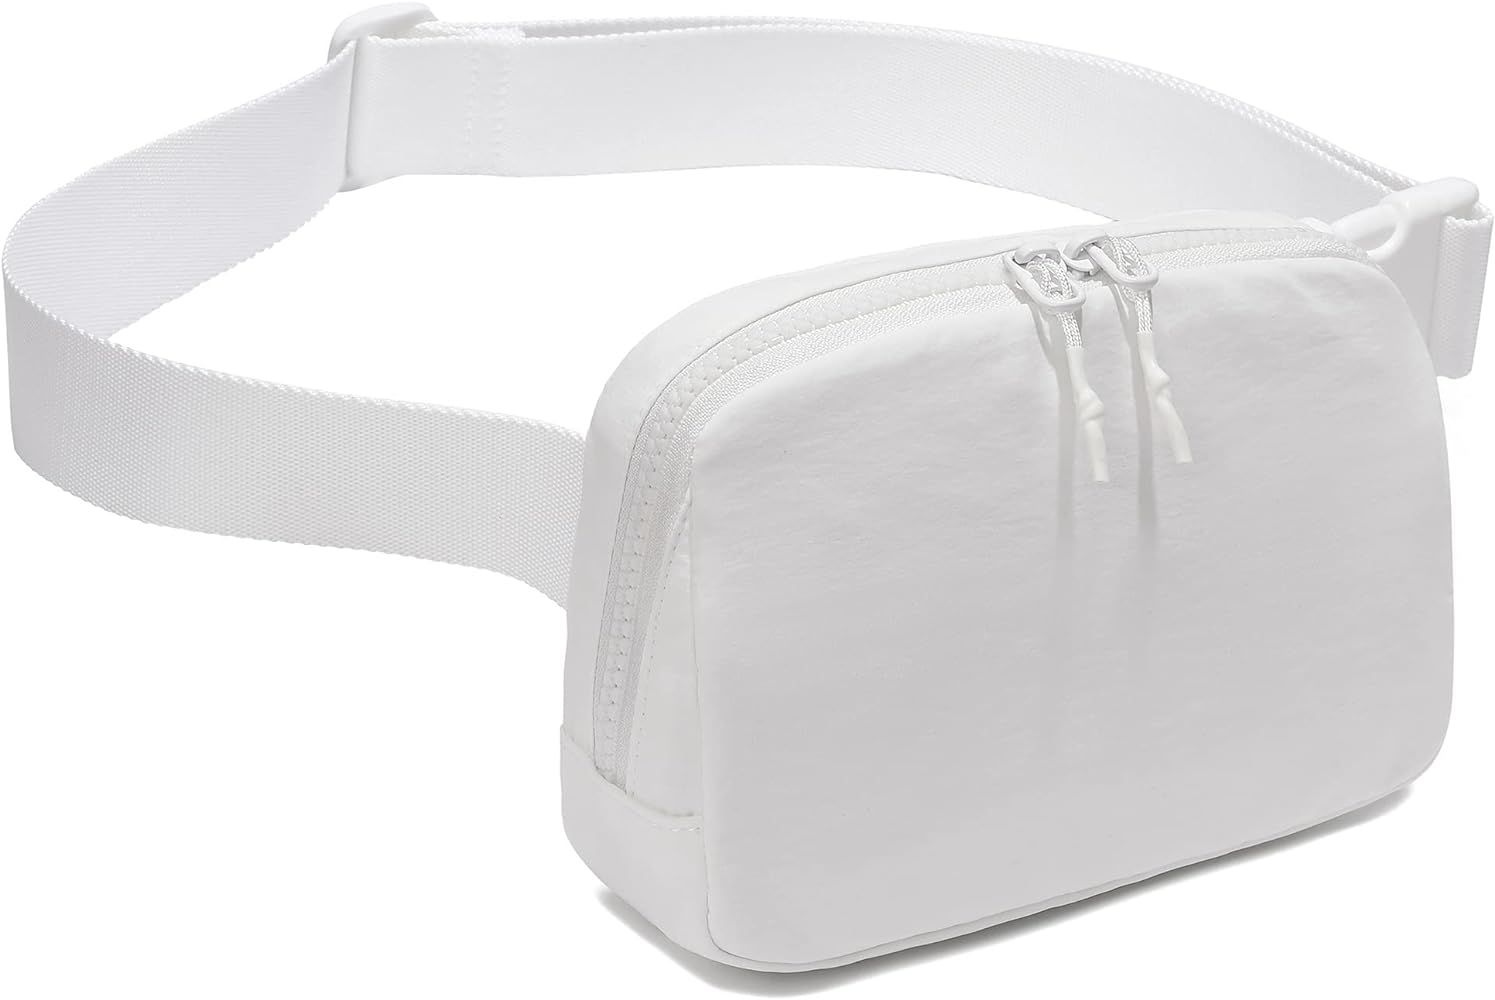 Unisex Two-way Zipper Belt Bag | Amazon (US)